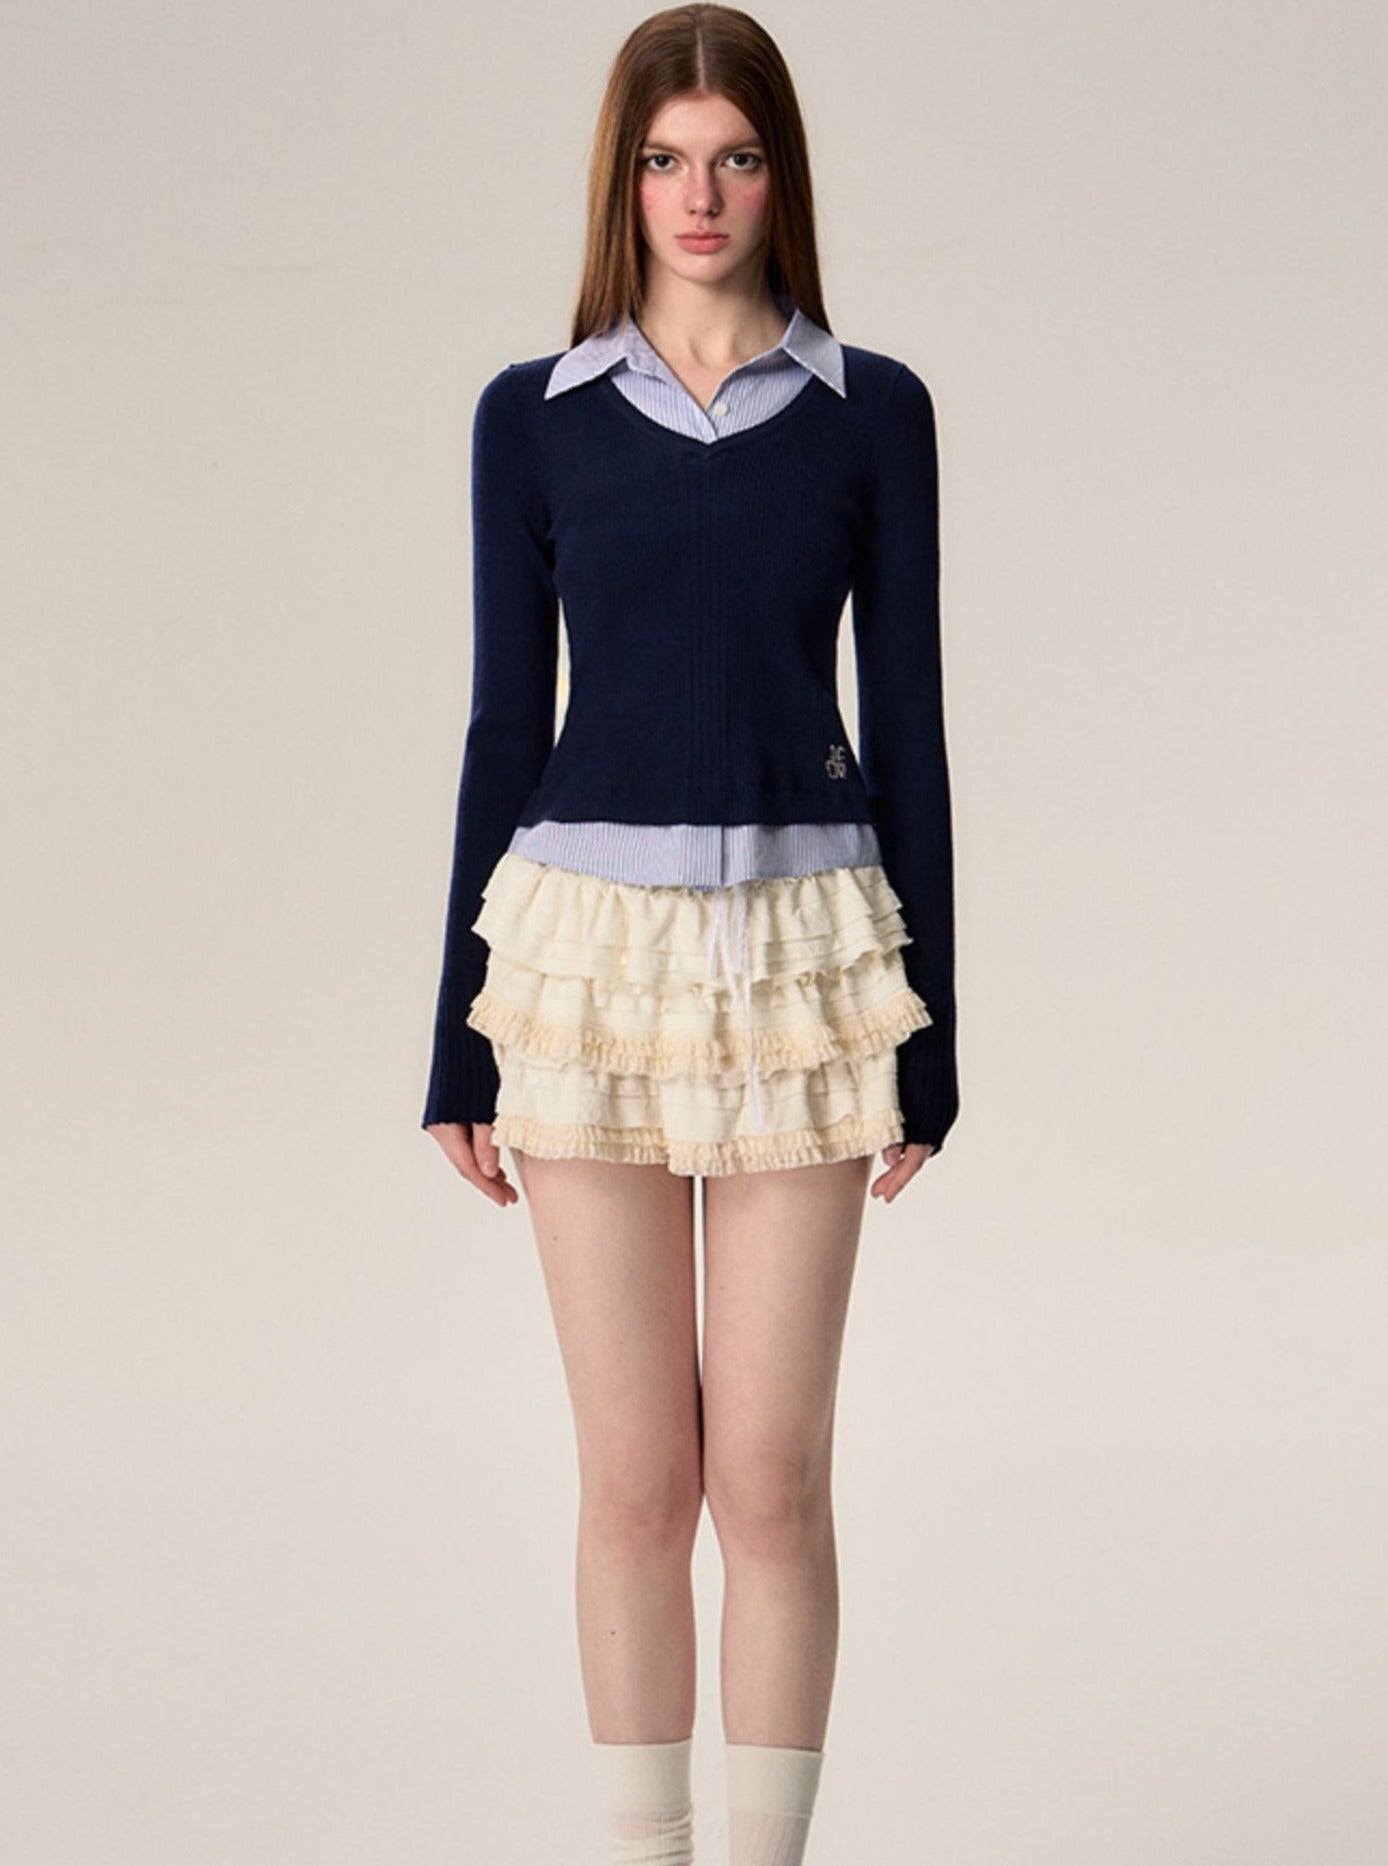 Vintage Ballet Style Cake Skirt